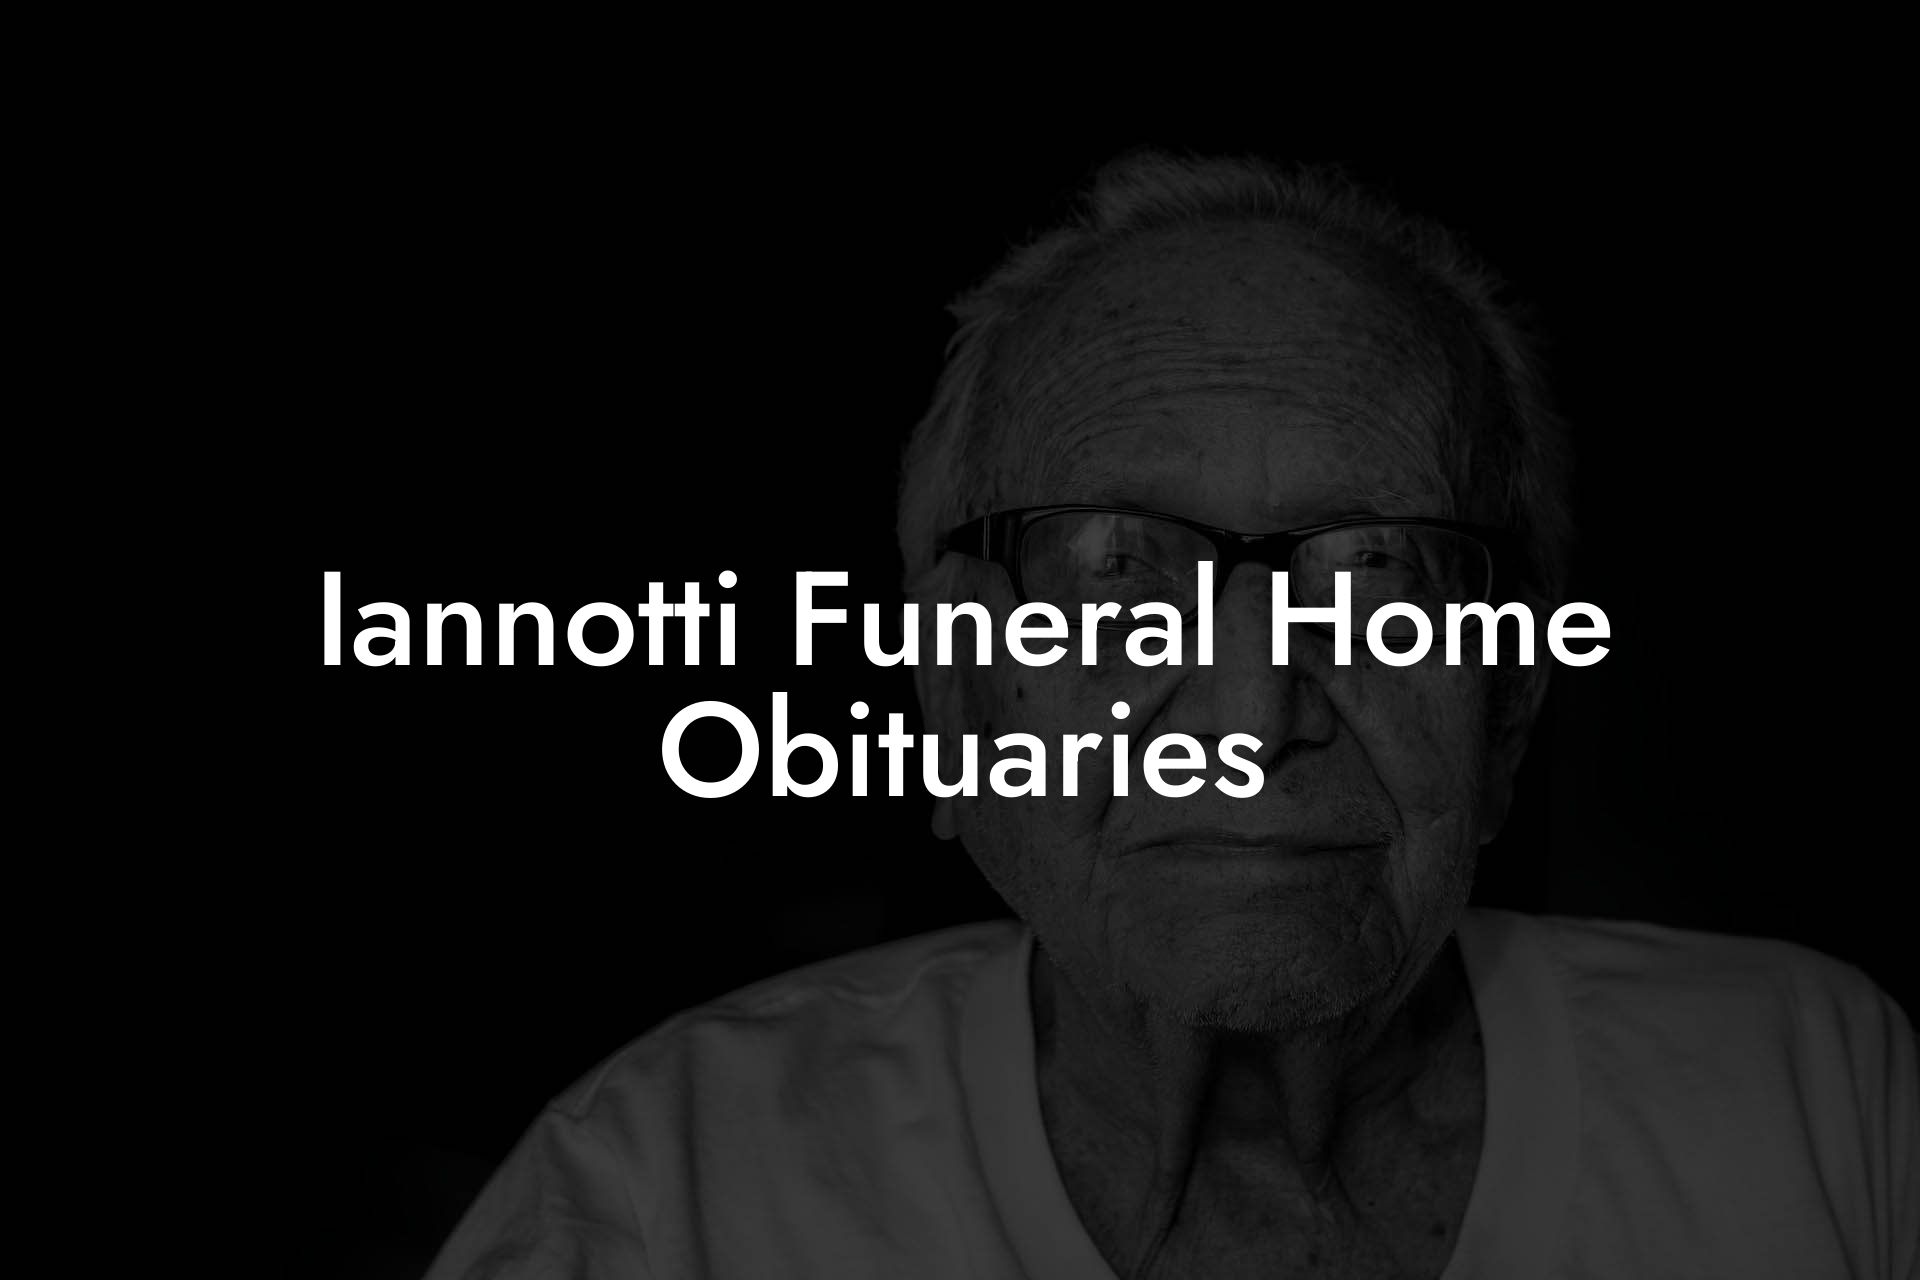 Iannotti Funeral Home Obituaries